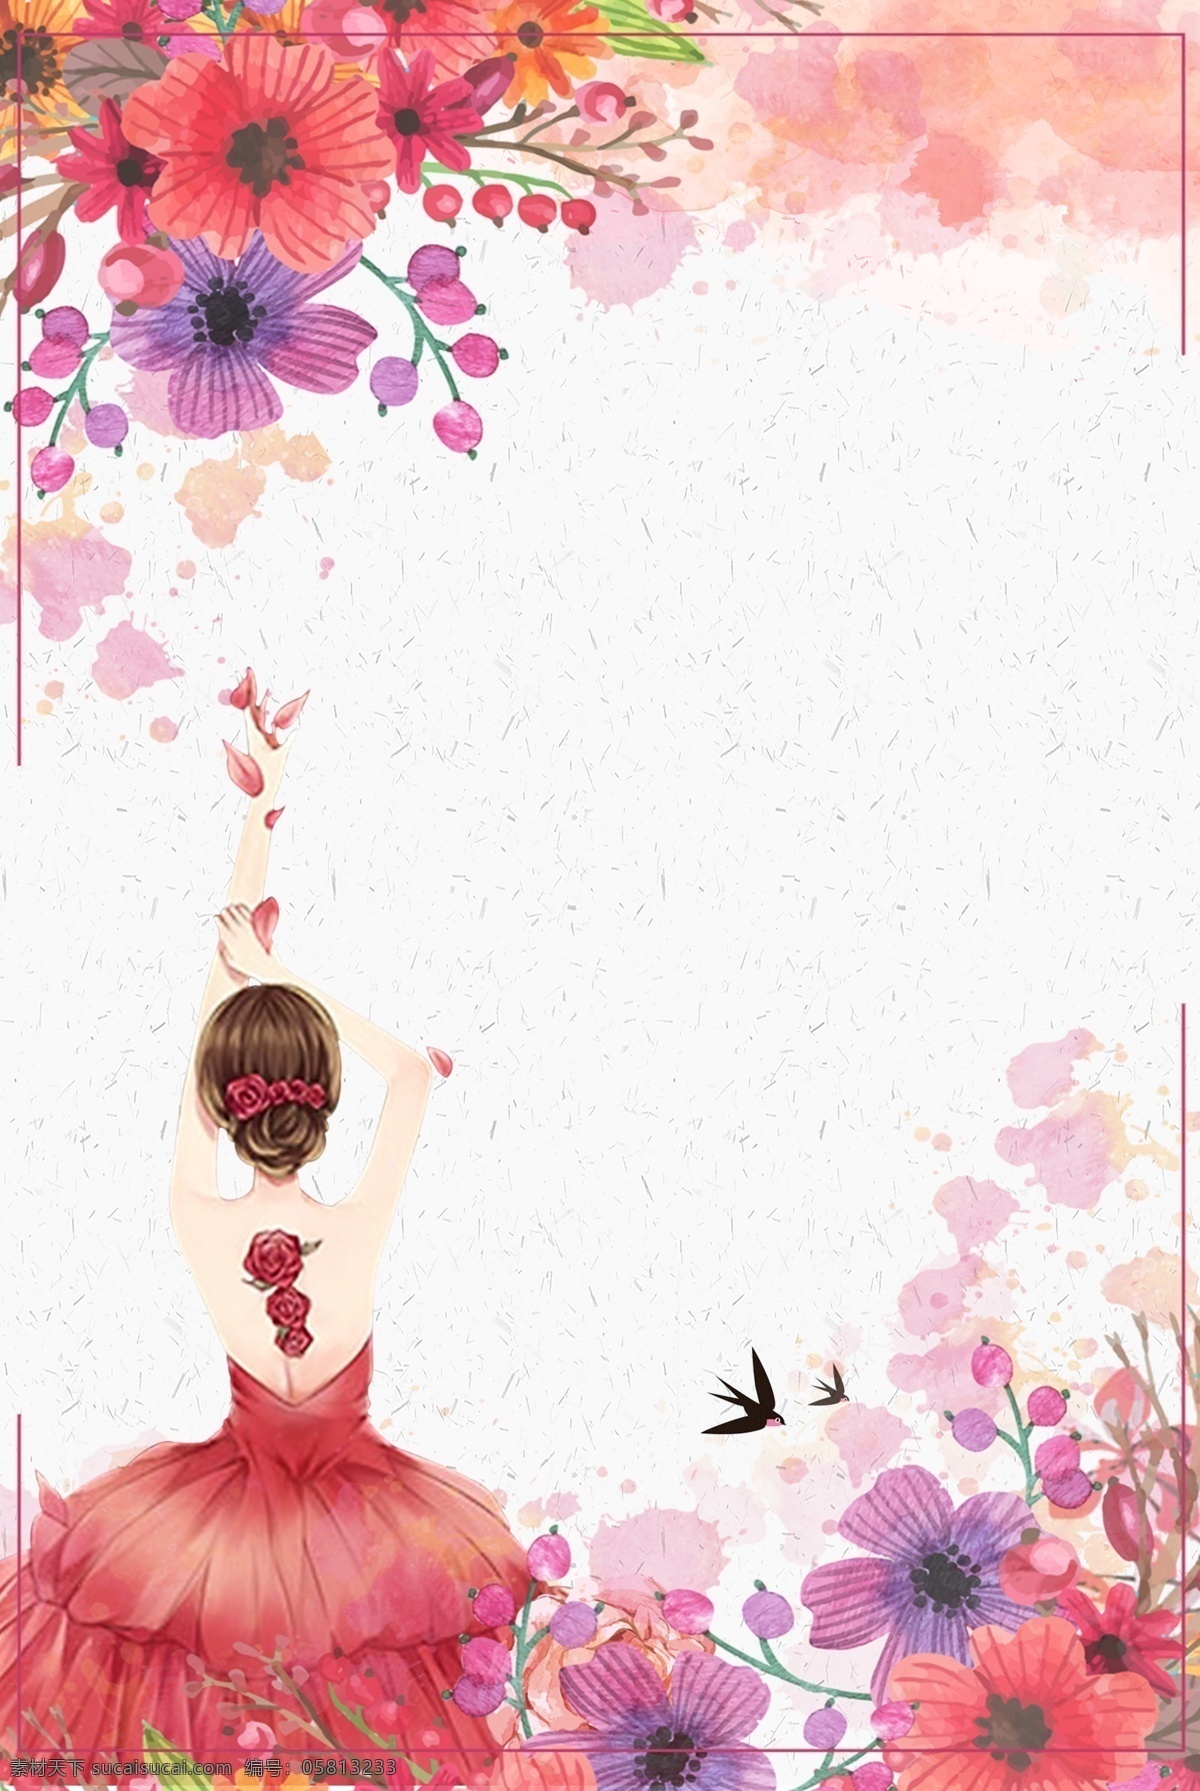 红色 温馨 38 节 女神 海报 背景 38节 女神节 花瓣 文艺 清新 手绘 质感 纹理